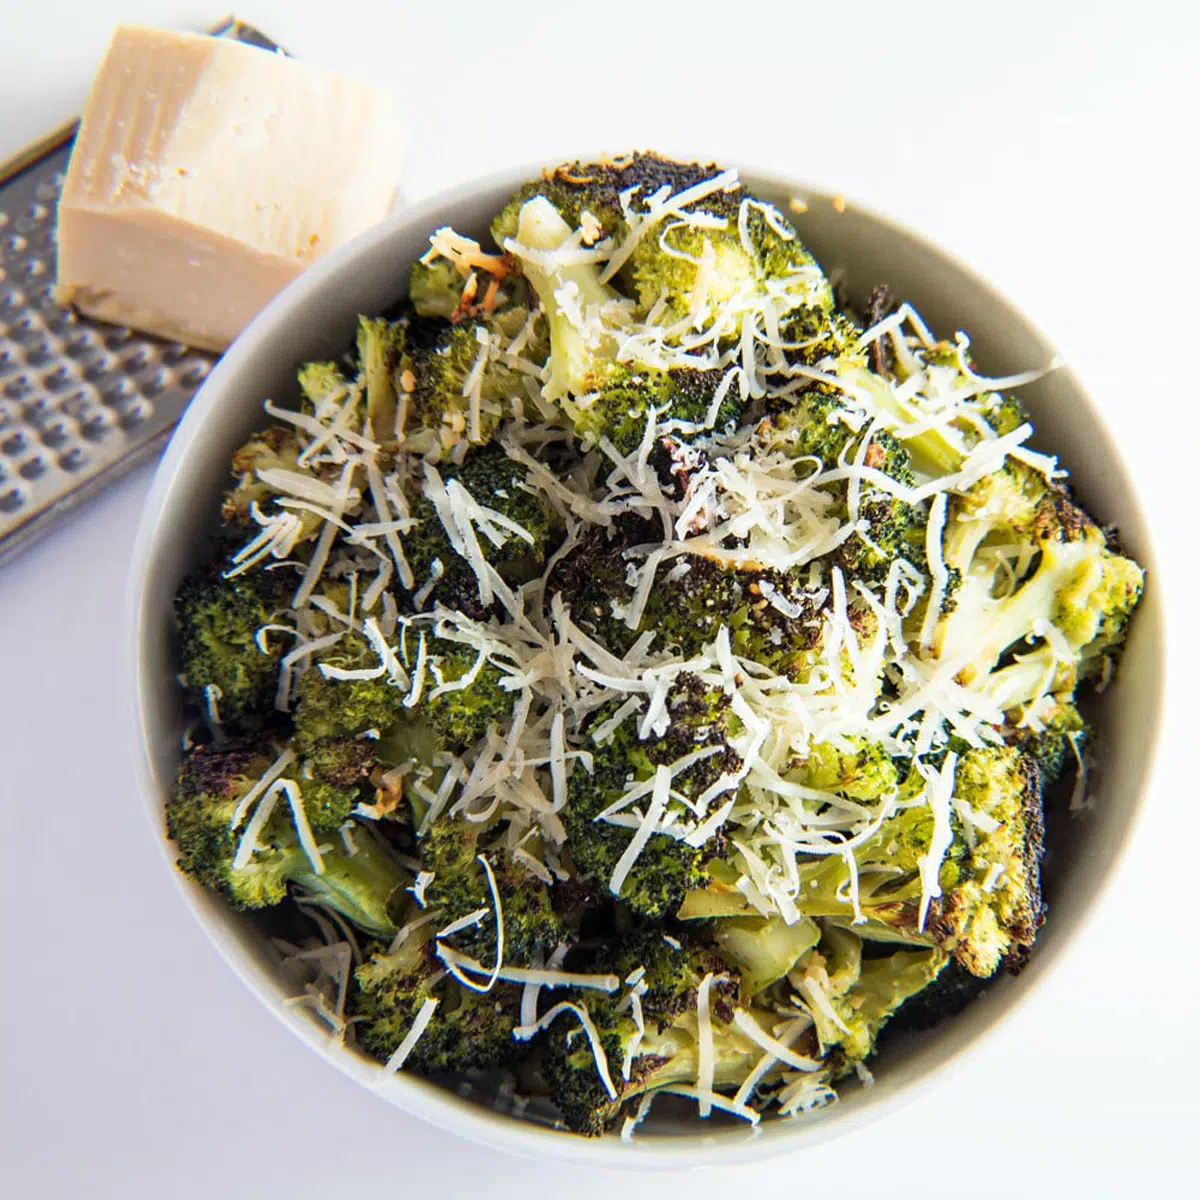 Pečena brokula u bijeloj zdjeli s parmezanom na vrhu.